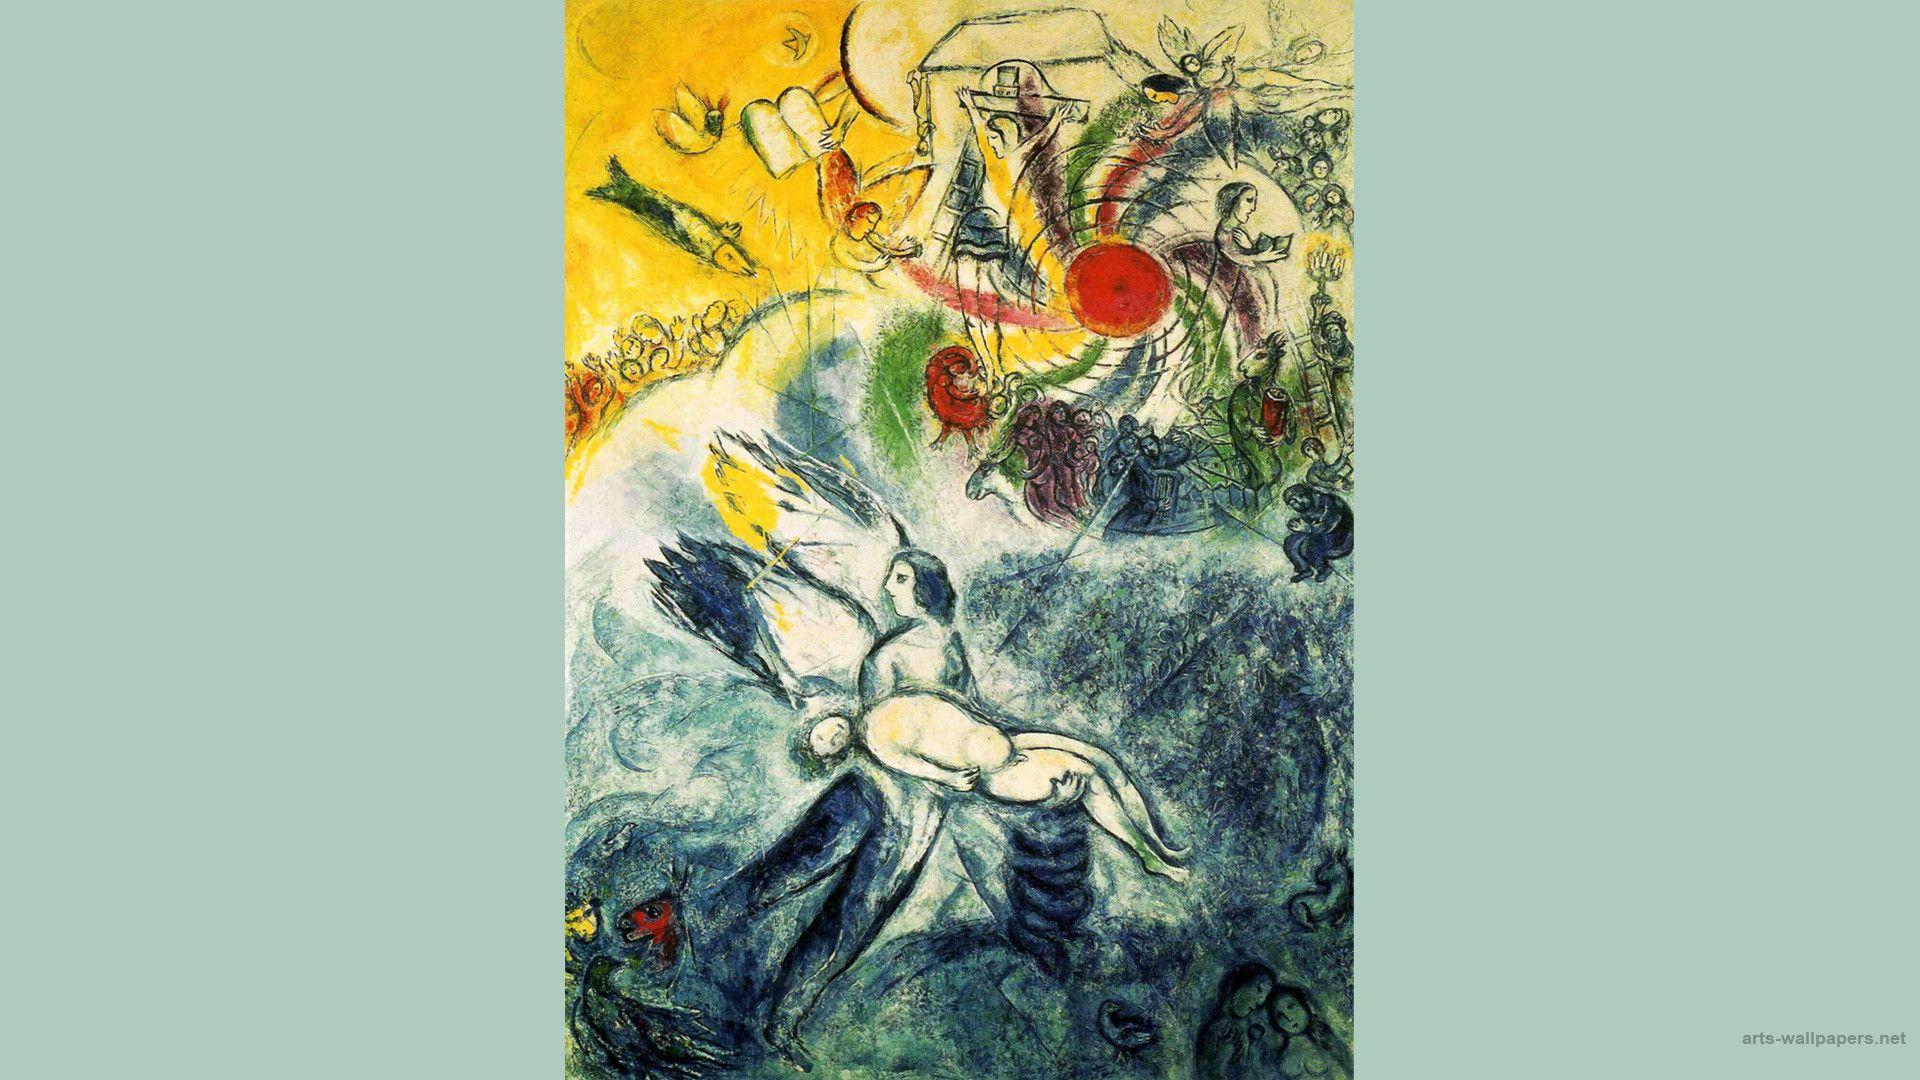 عکس نقاشی مفهومی مارک شاگال marc chagall نقاش شهیر 